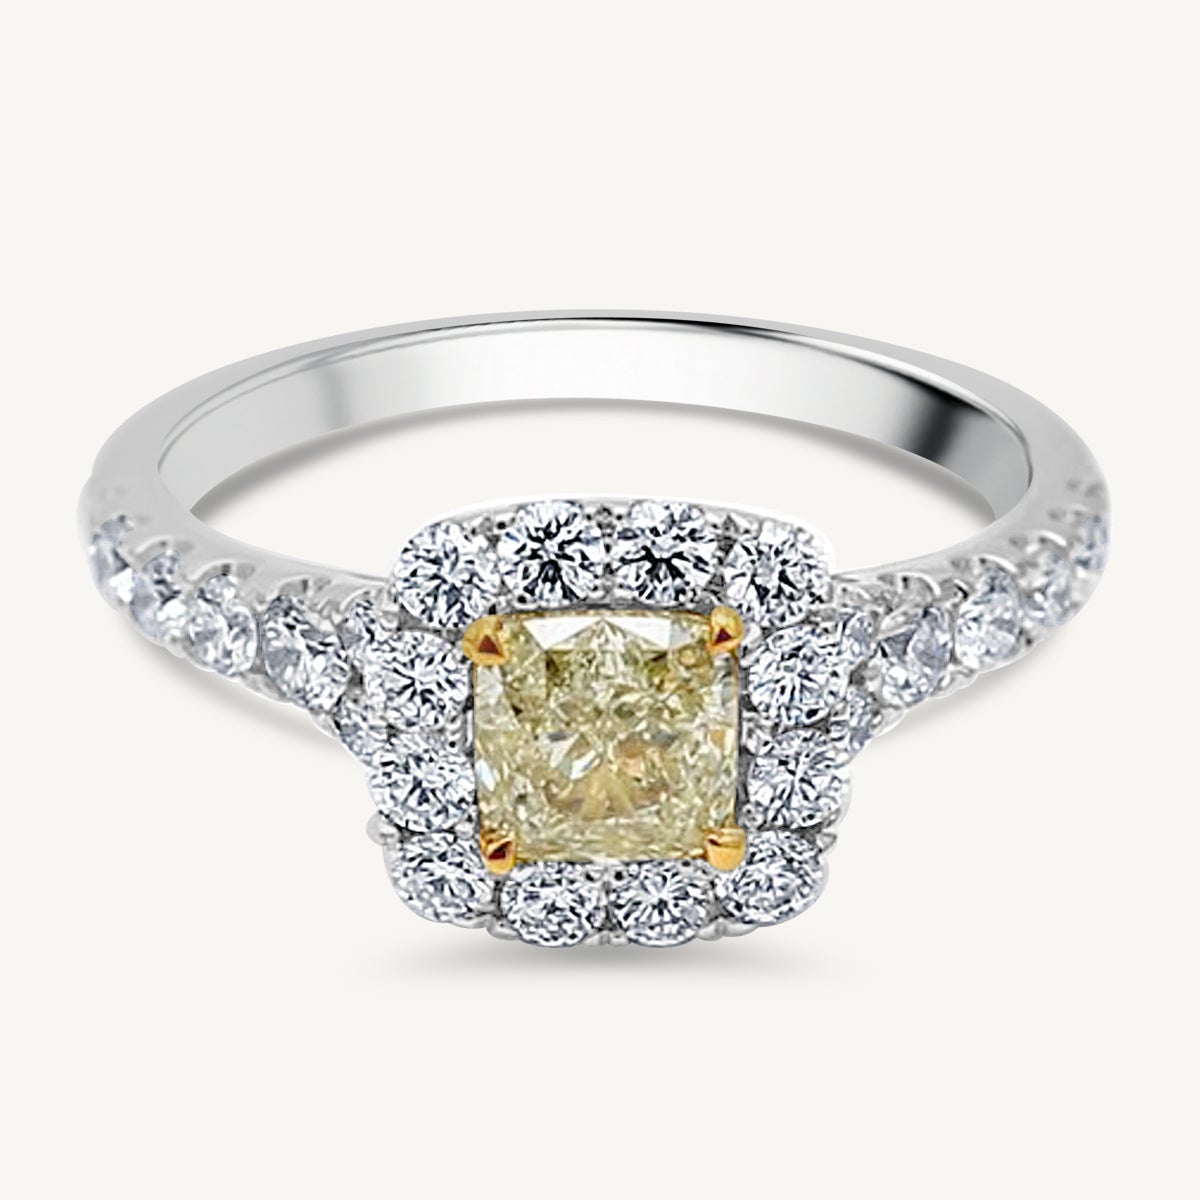 Bague en or jaune coussin et diamants blancs de 1.59 carat poids total certifiés GIA